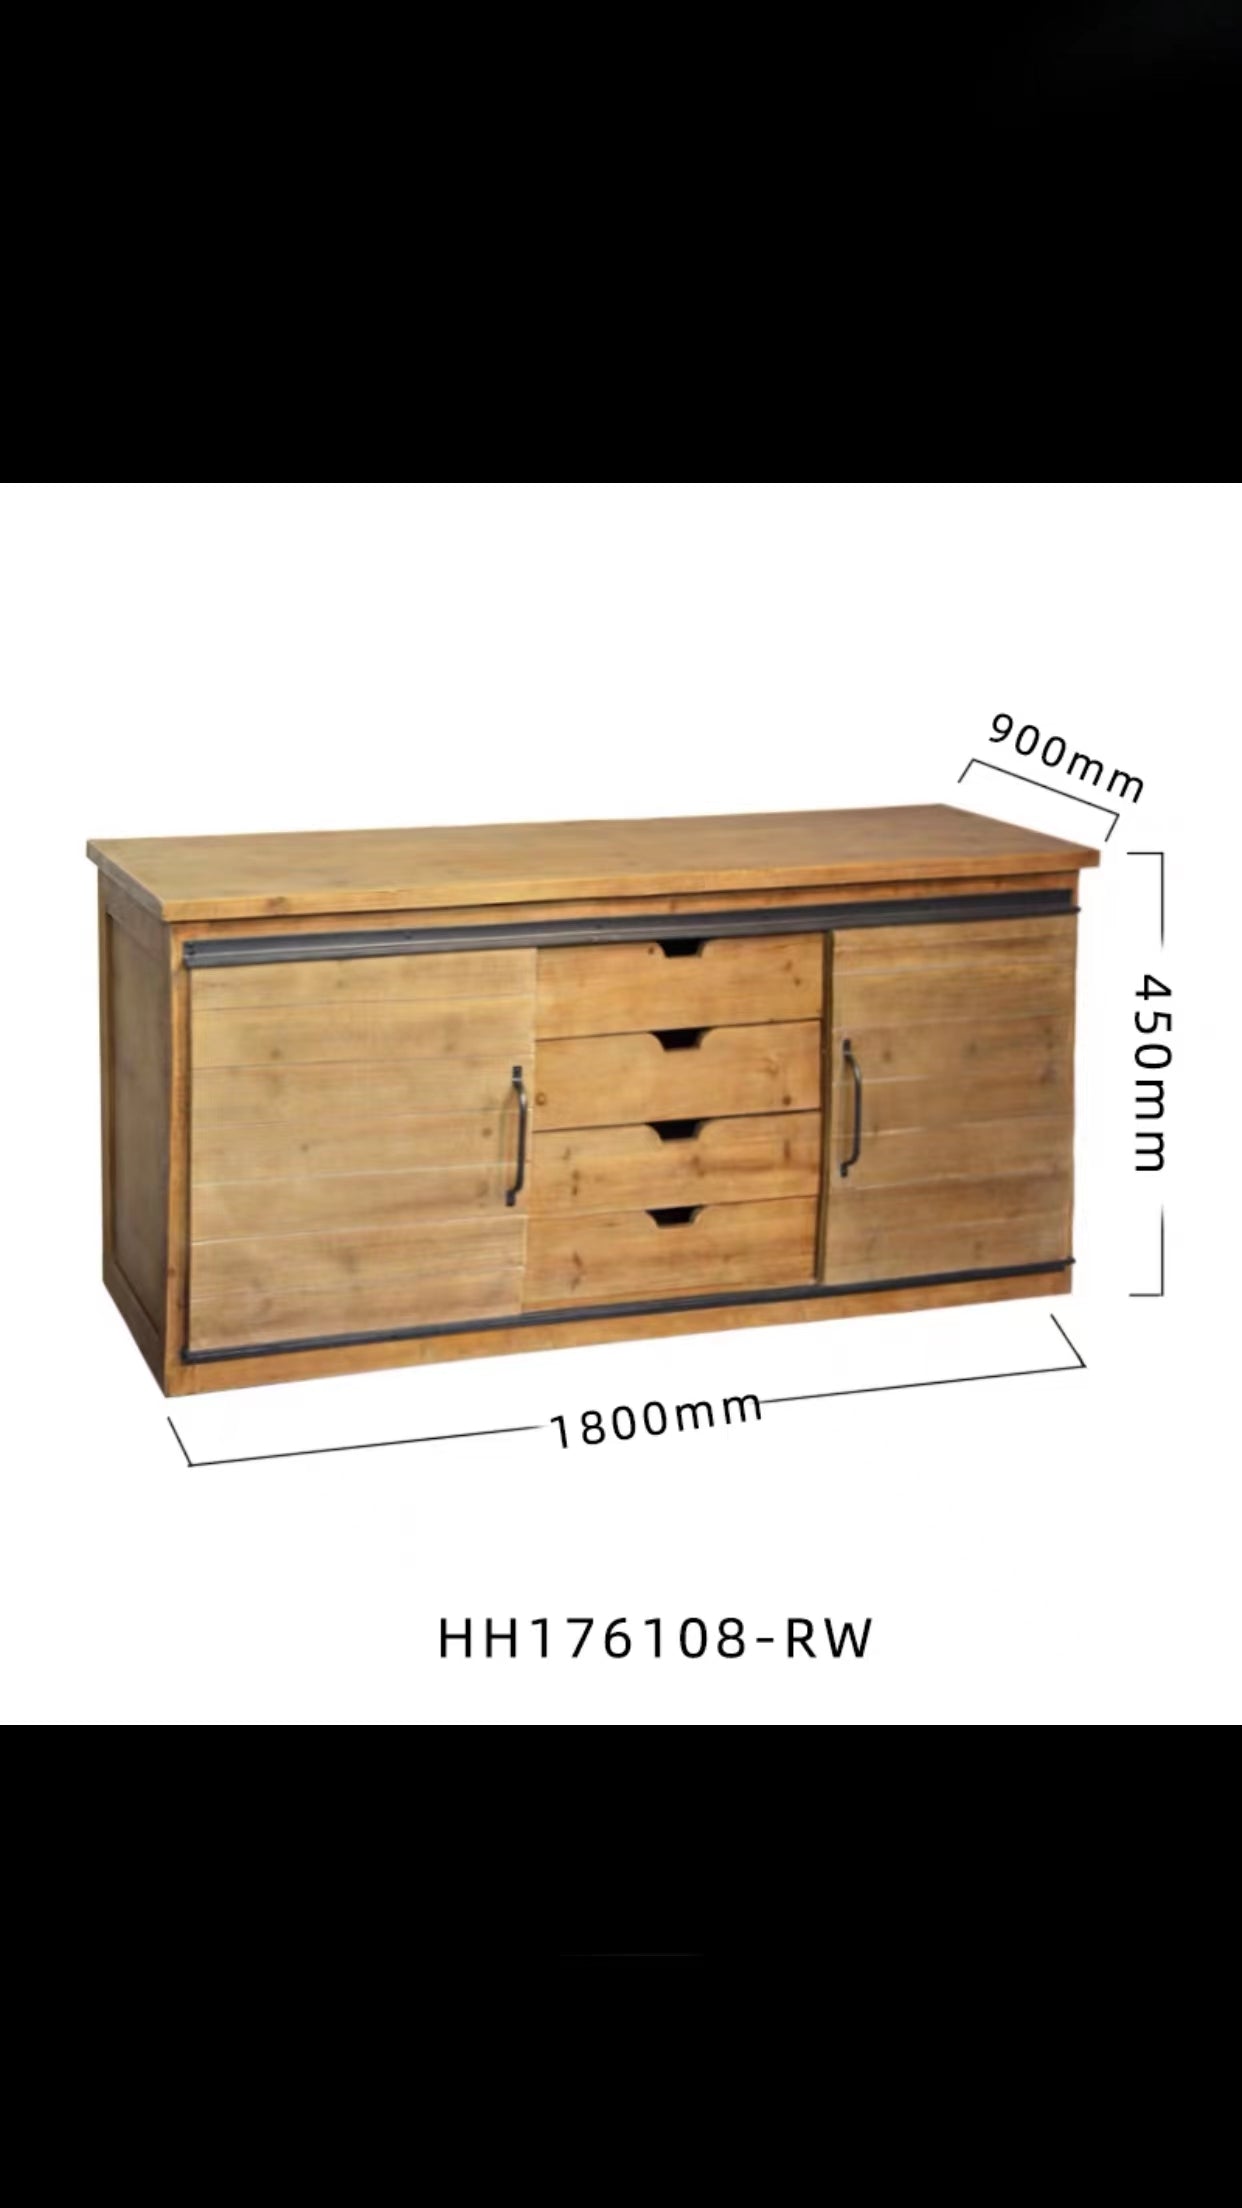 Evesham Solid Wood Sideboard - 4 Seasons Home Gadgets